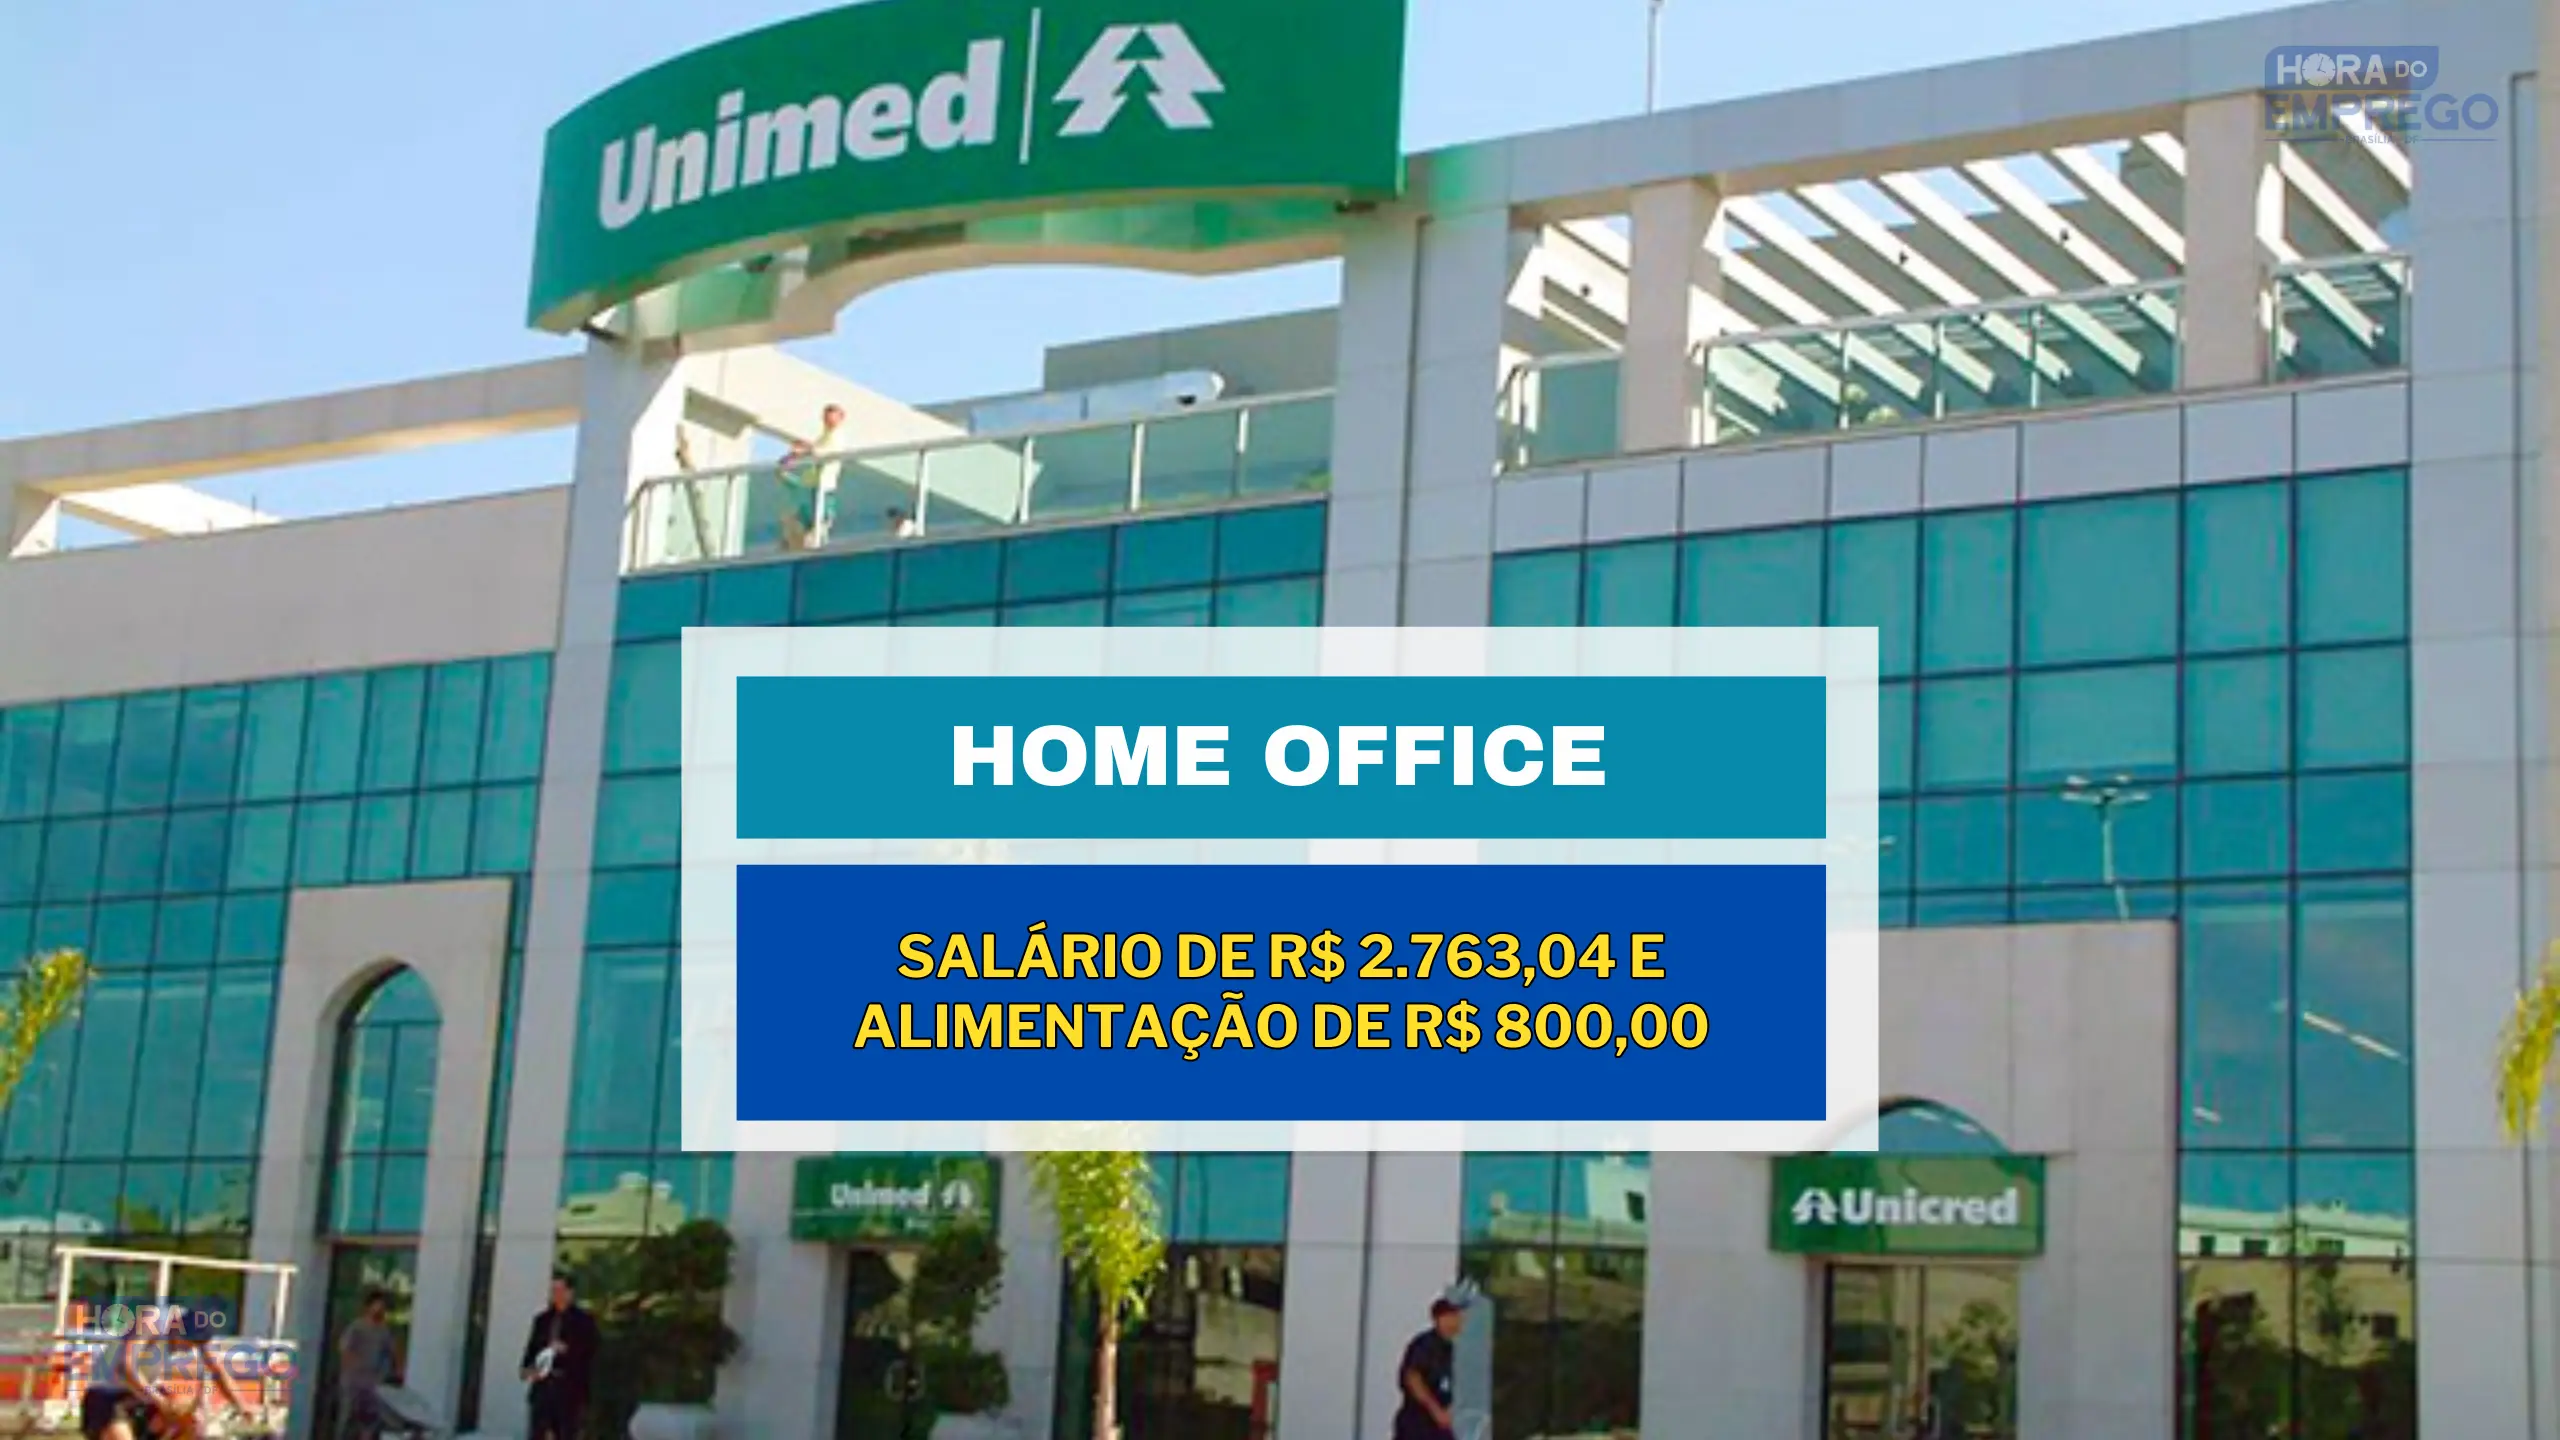 Unimed abriu vaga HOME OFFICE com salário de R$ 2.763,04 e Alimentação de R$ 800,00 para Assistente Administrativo